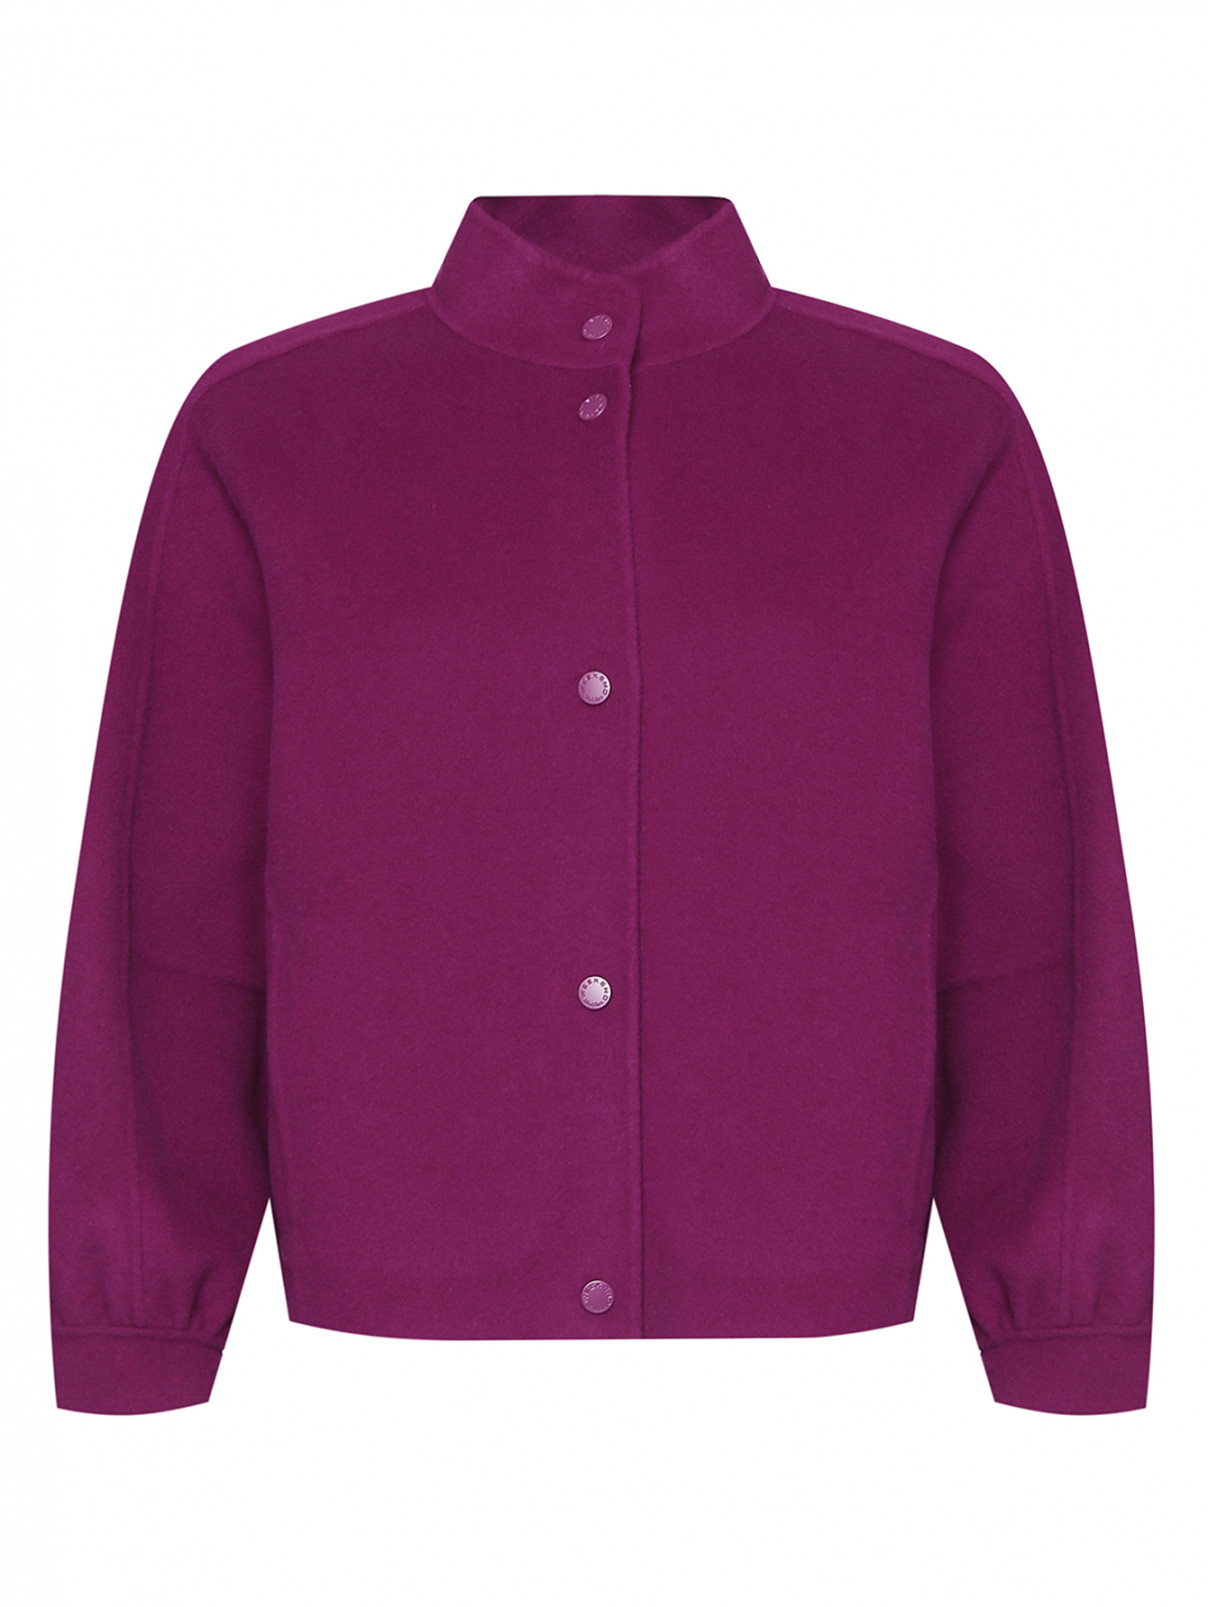 Полупальто из шерсти с карманами Weekend Max Mara  –  Общий вид  – Цвет:  Фиолетовый